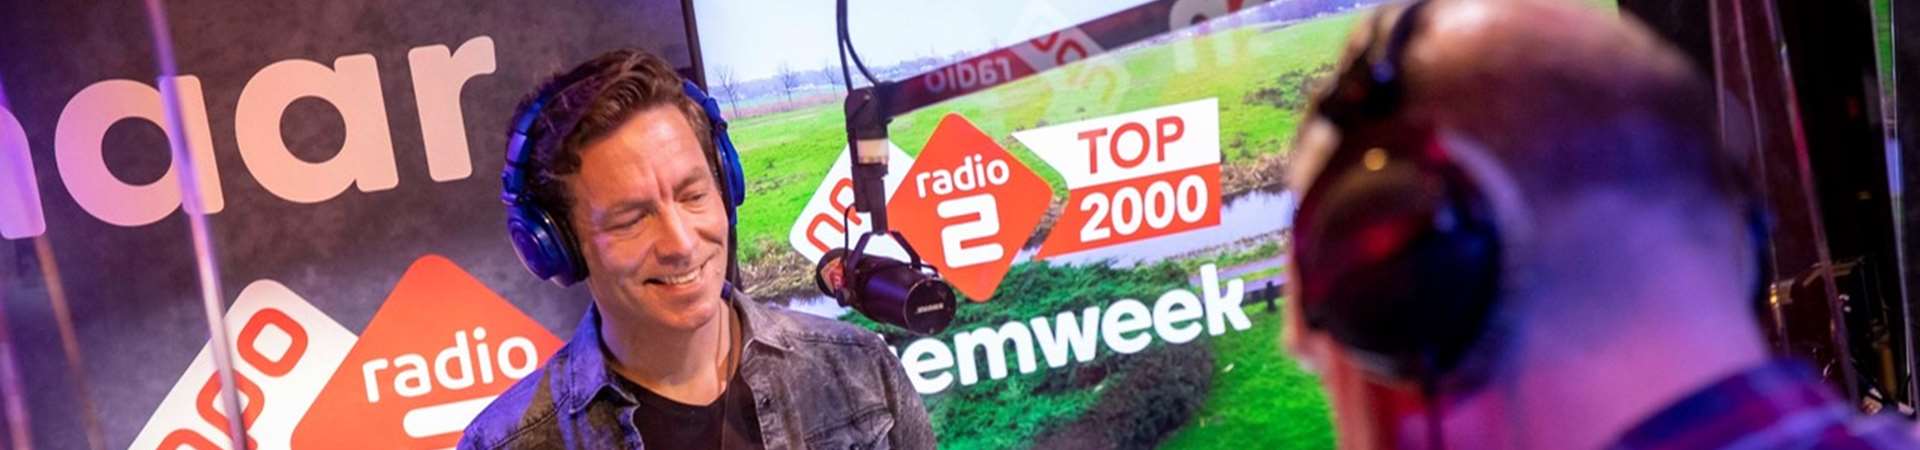 NPO Radio 2 Top 2000 Adverteren